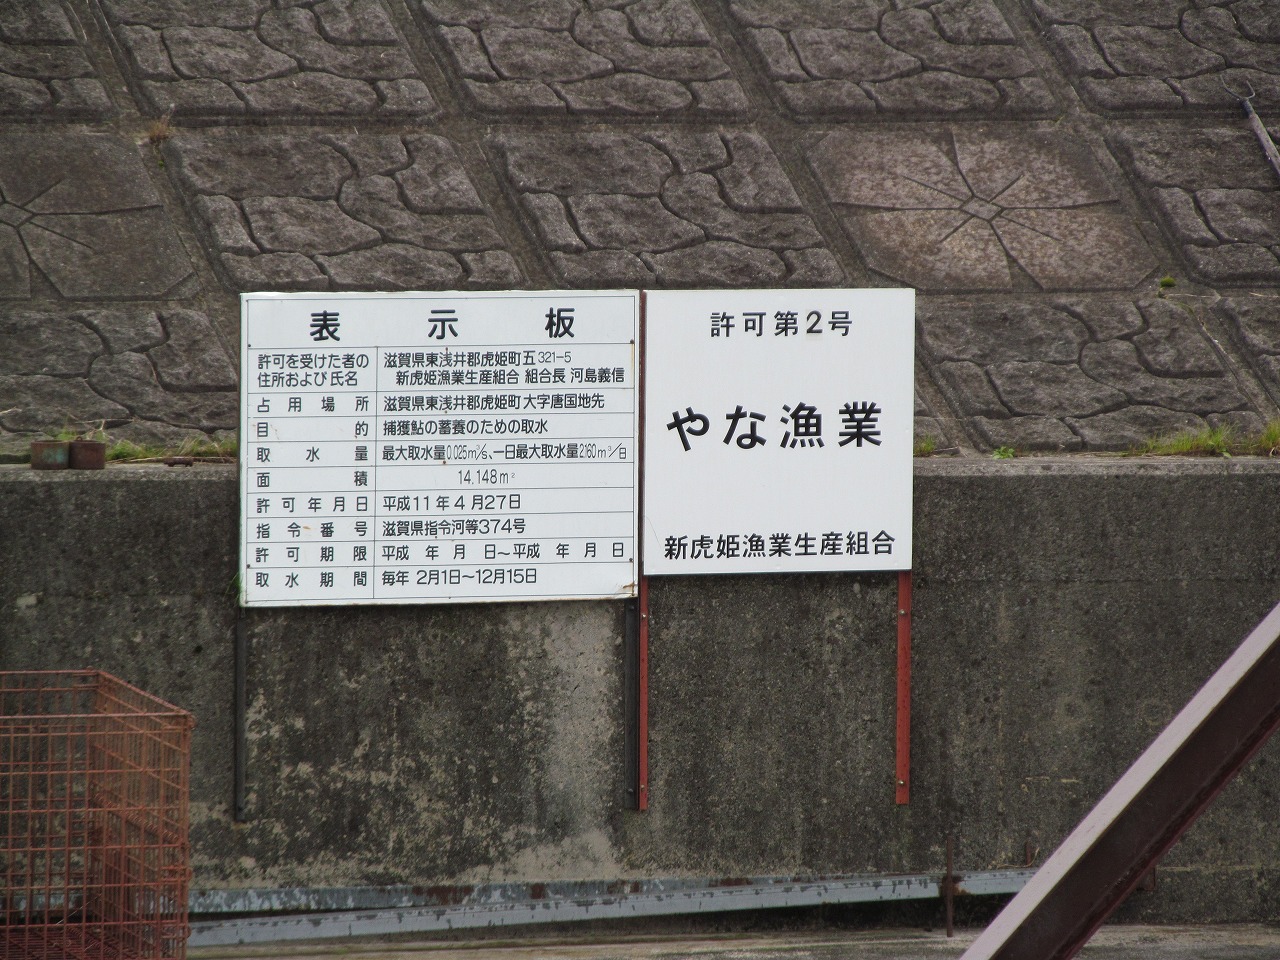 長田と柿ノ木の間にある、「やな漁」の施設。これをめぐる利権が原因で地区内で対立が起きたこともあったという。